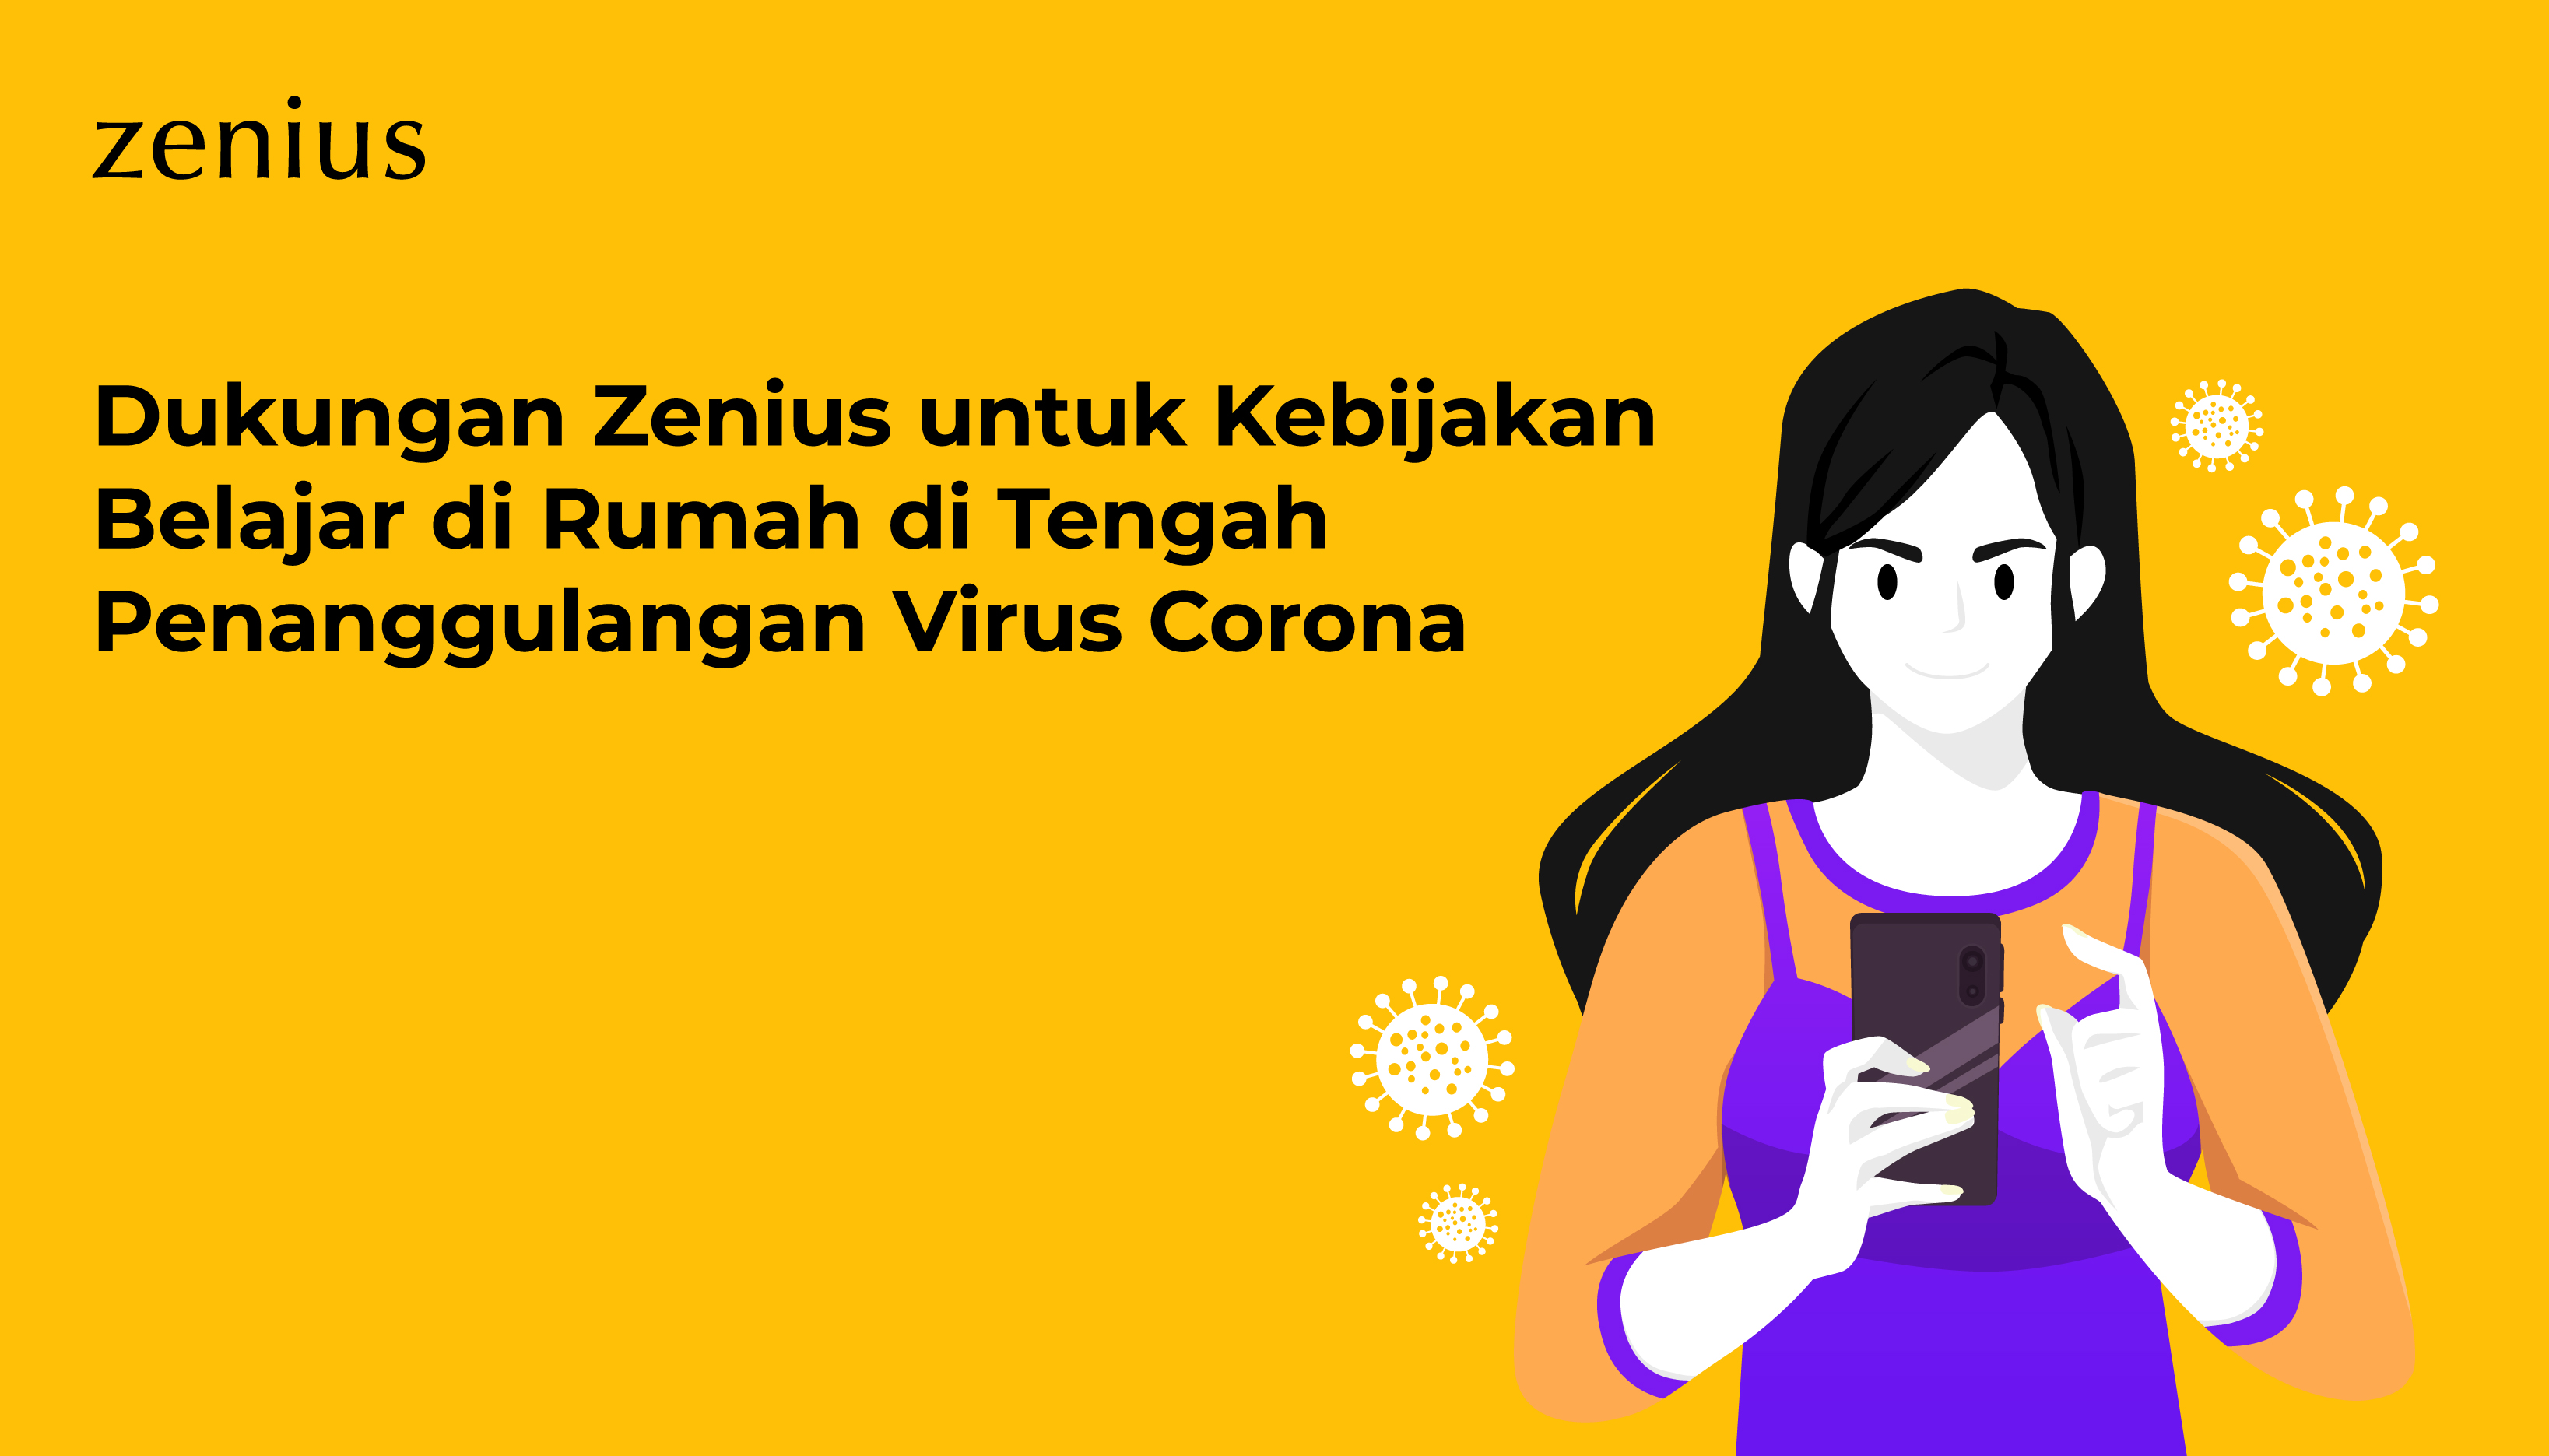 Dukungan Zenius untuk Kebijakan Belajar di Rumah di Tengah Penanggulangan Virus Corona 55